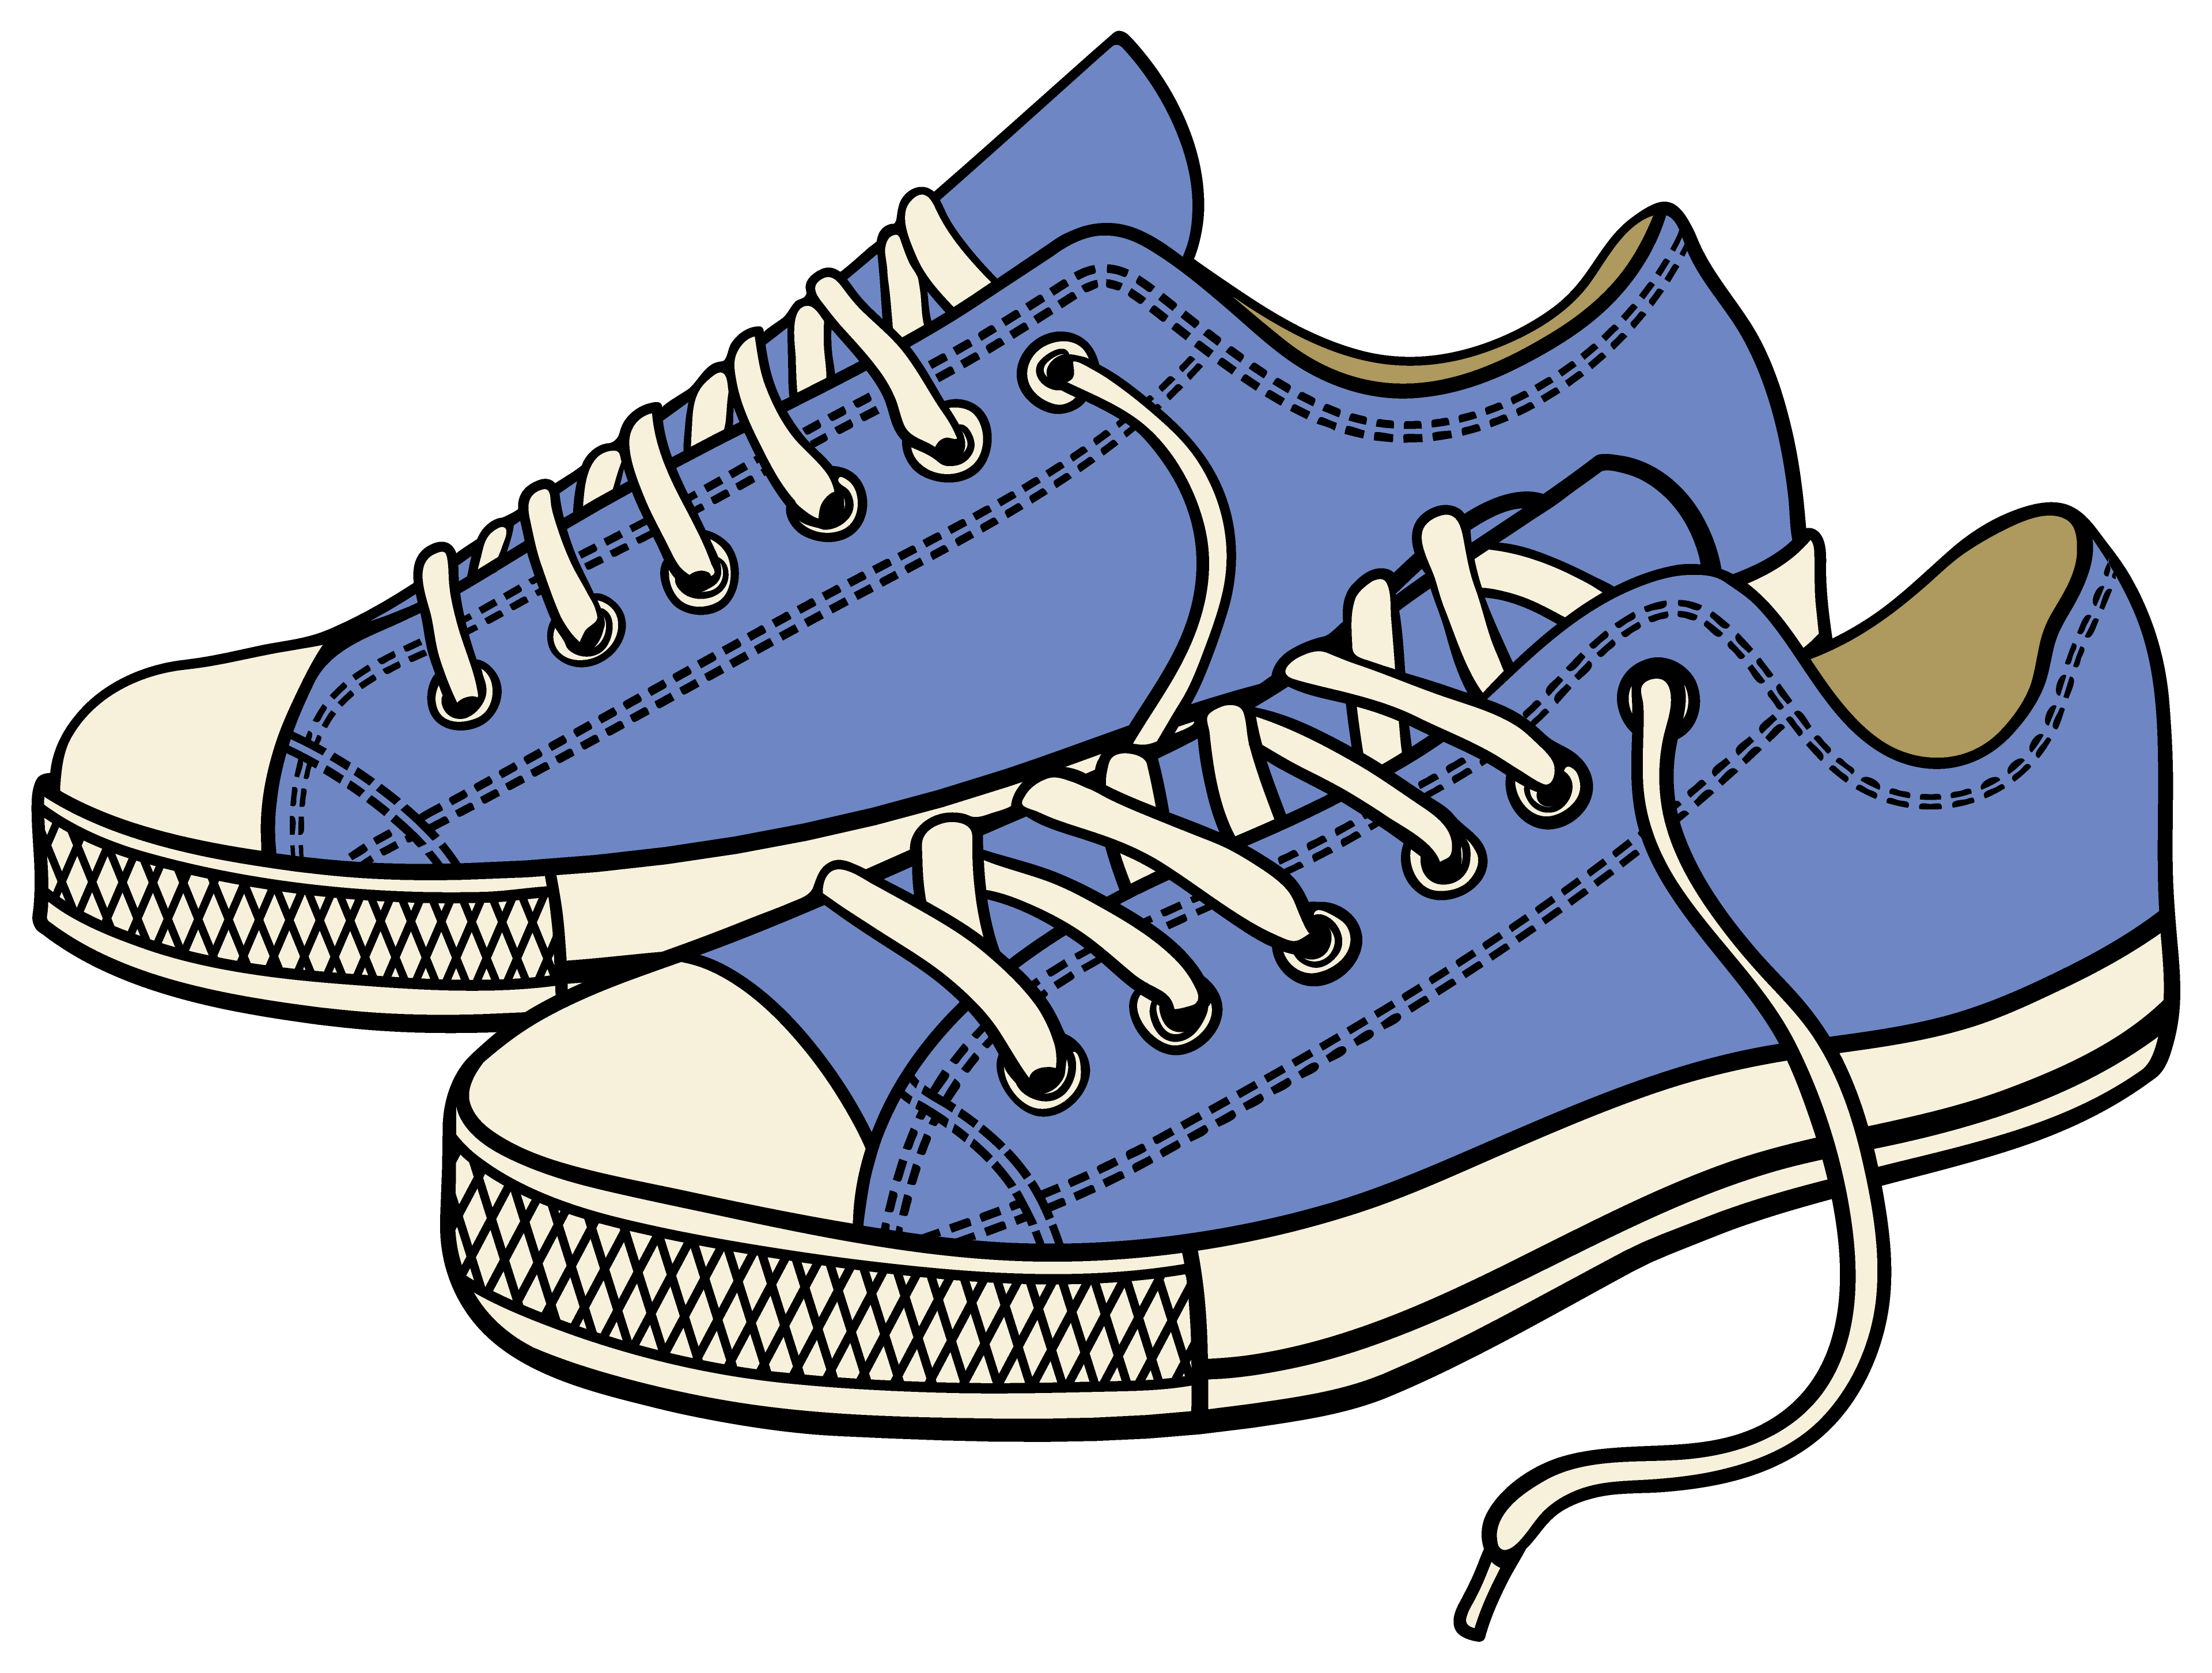 Sneakers Air Jordan Shoe Clip art - cartoon shoes png download - 3840*